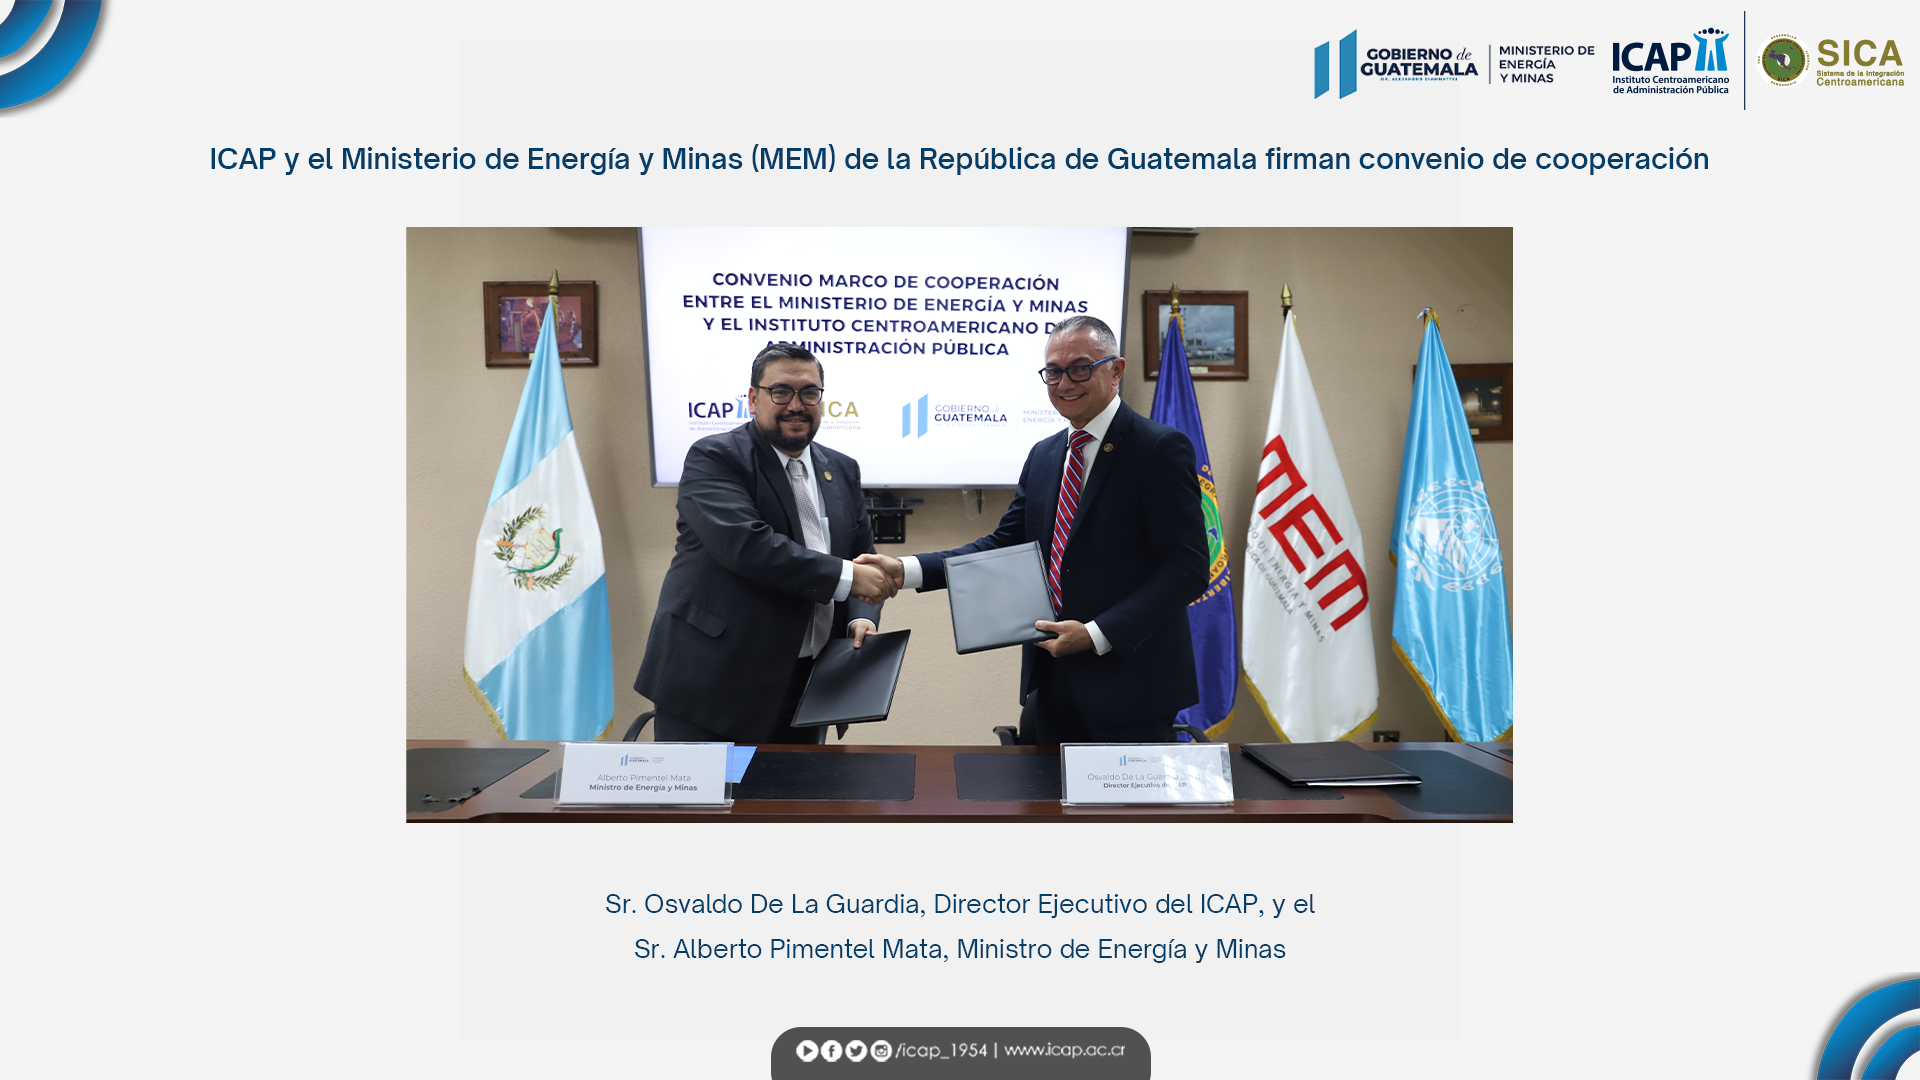 ICAP y el Ministerio de Energía y Minas de Guatemala firman convenio de cooperación